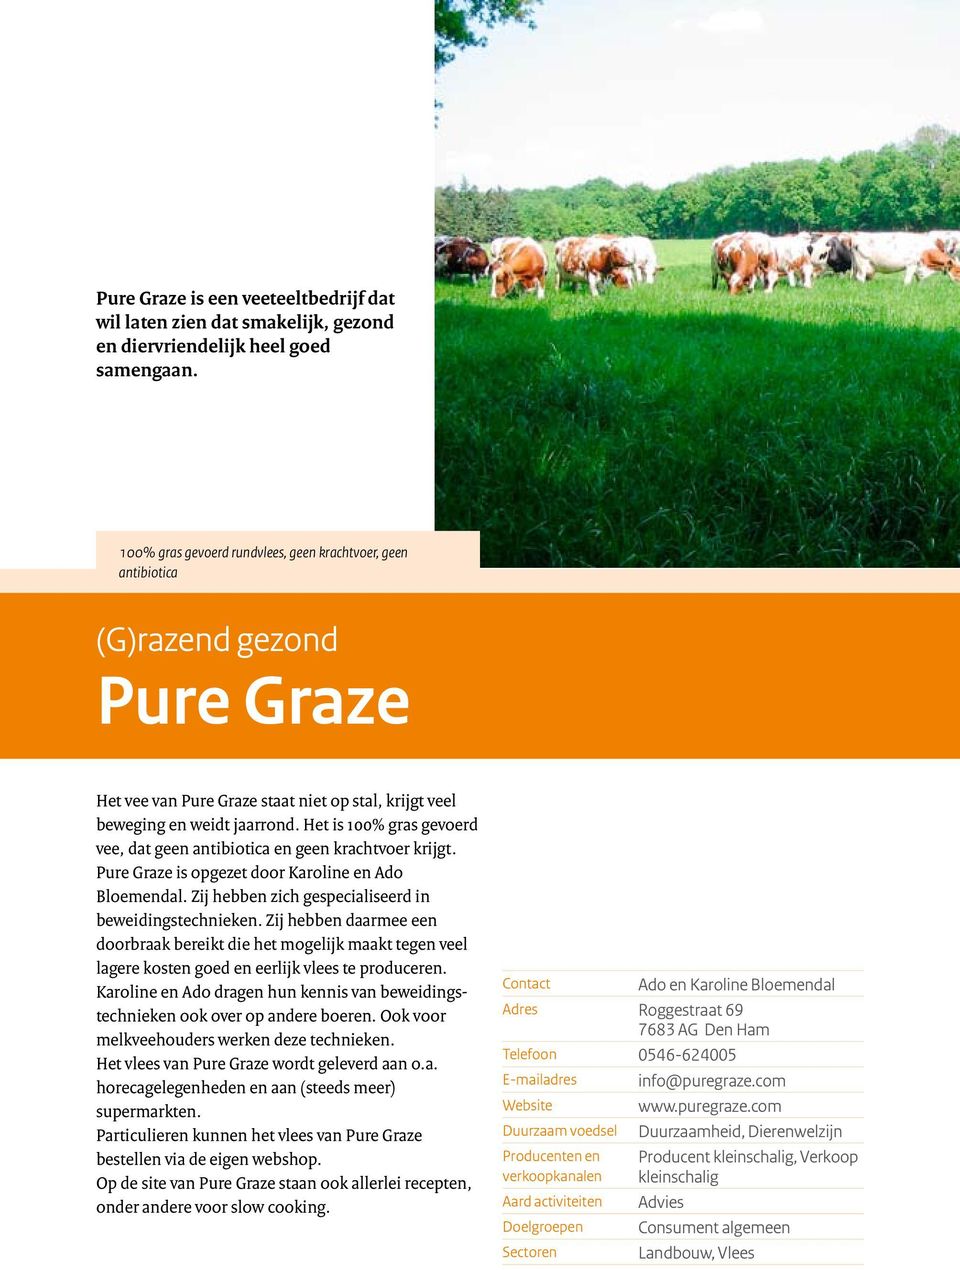 Het is 100% gras gevoerd vee, dat geen antibiotica en geen krachtvoer krijgt. Pure Graze is opgezet door Karoline en Ado Bloemendal. Zij hebben zich gespecialiseerd in beweidingstechnieken.